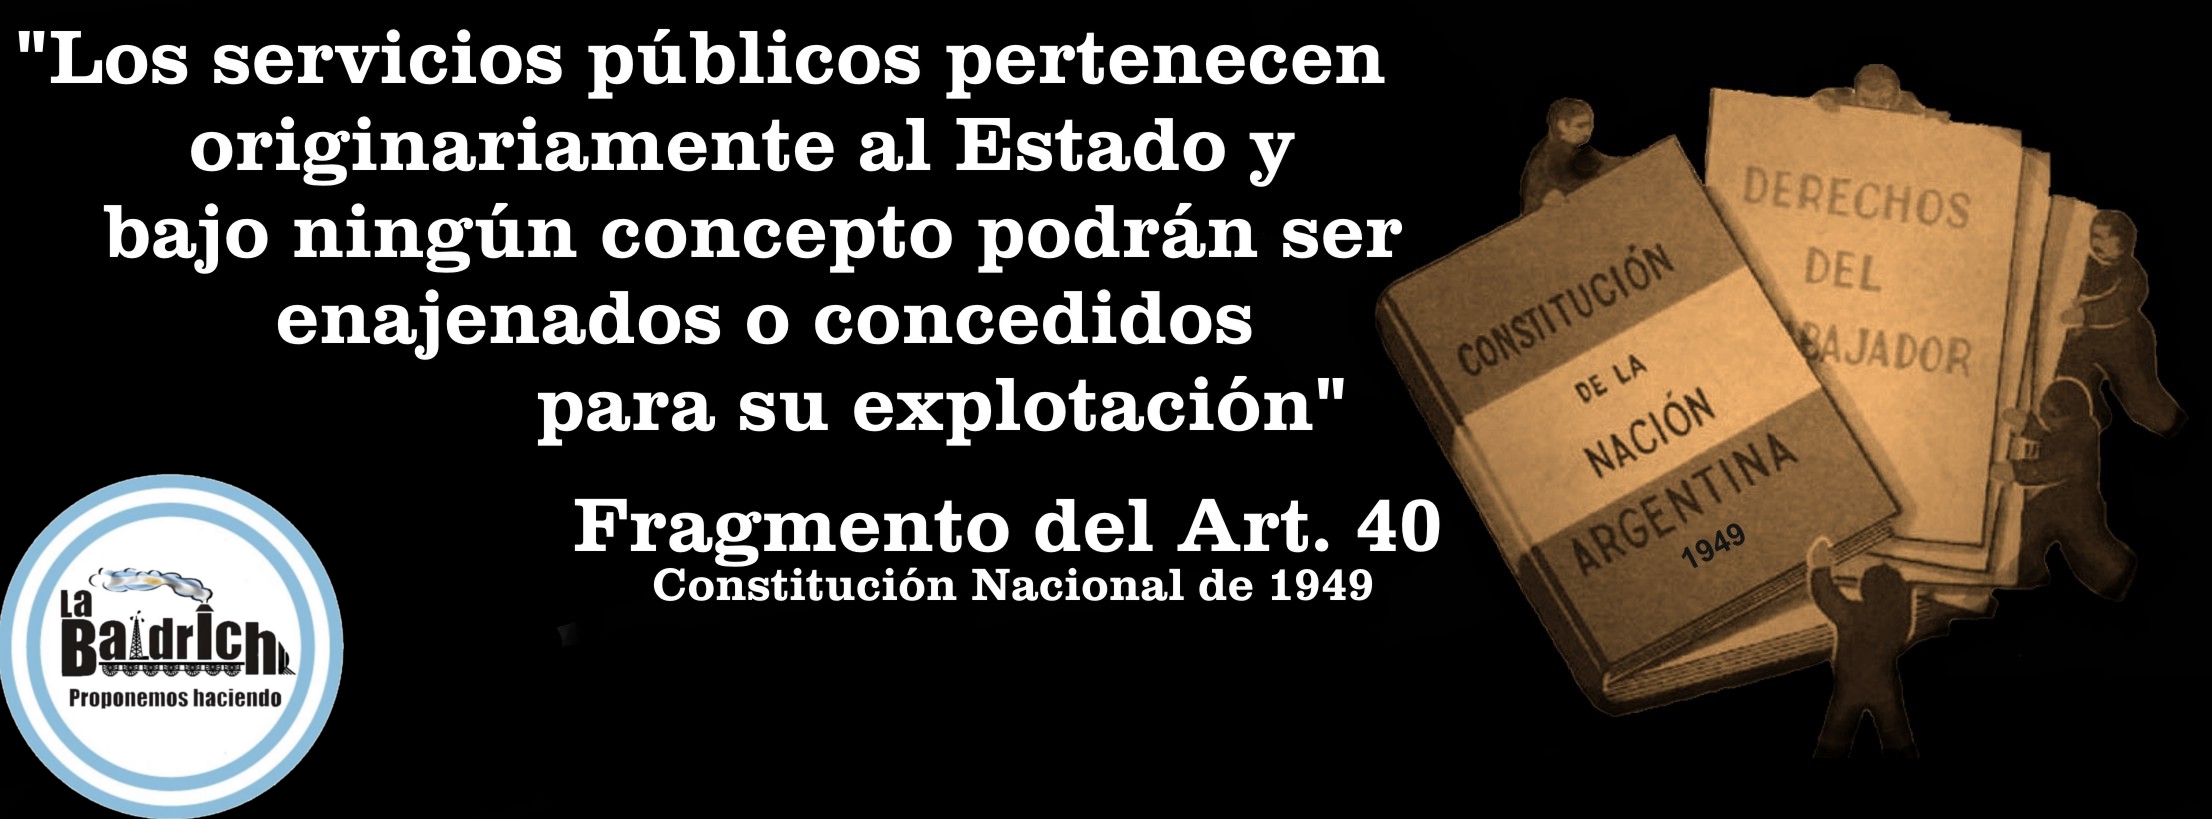 Artículo 40 de la constitución de 1949